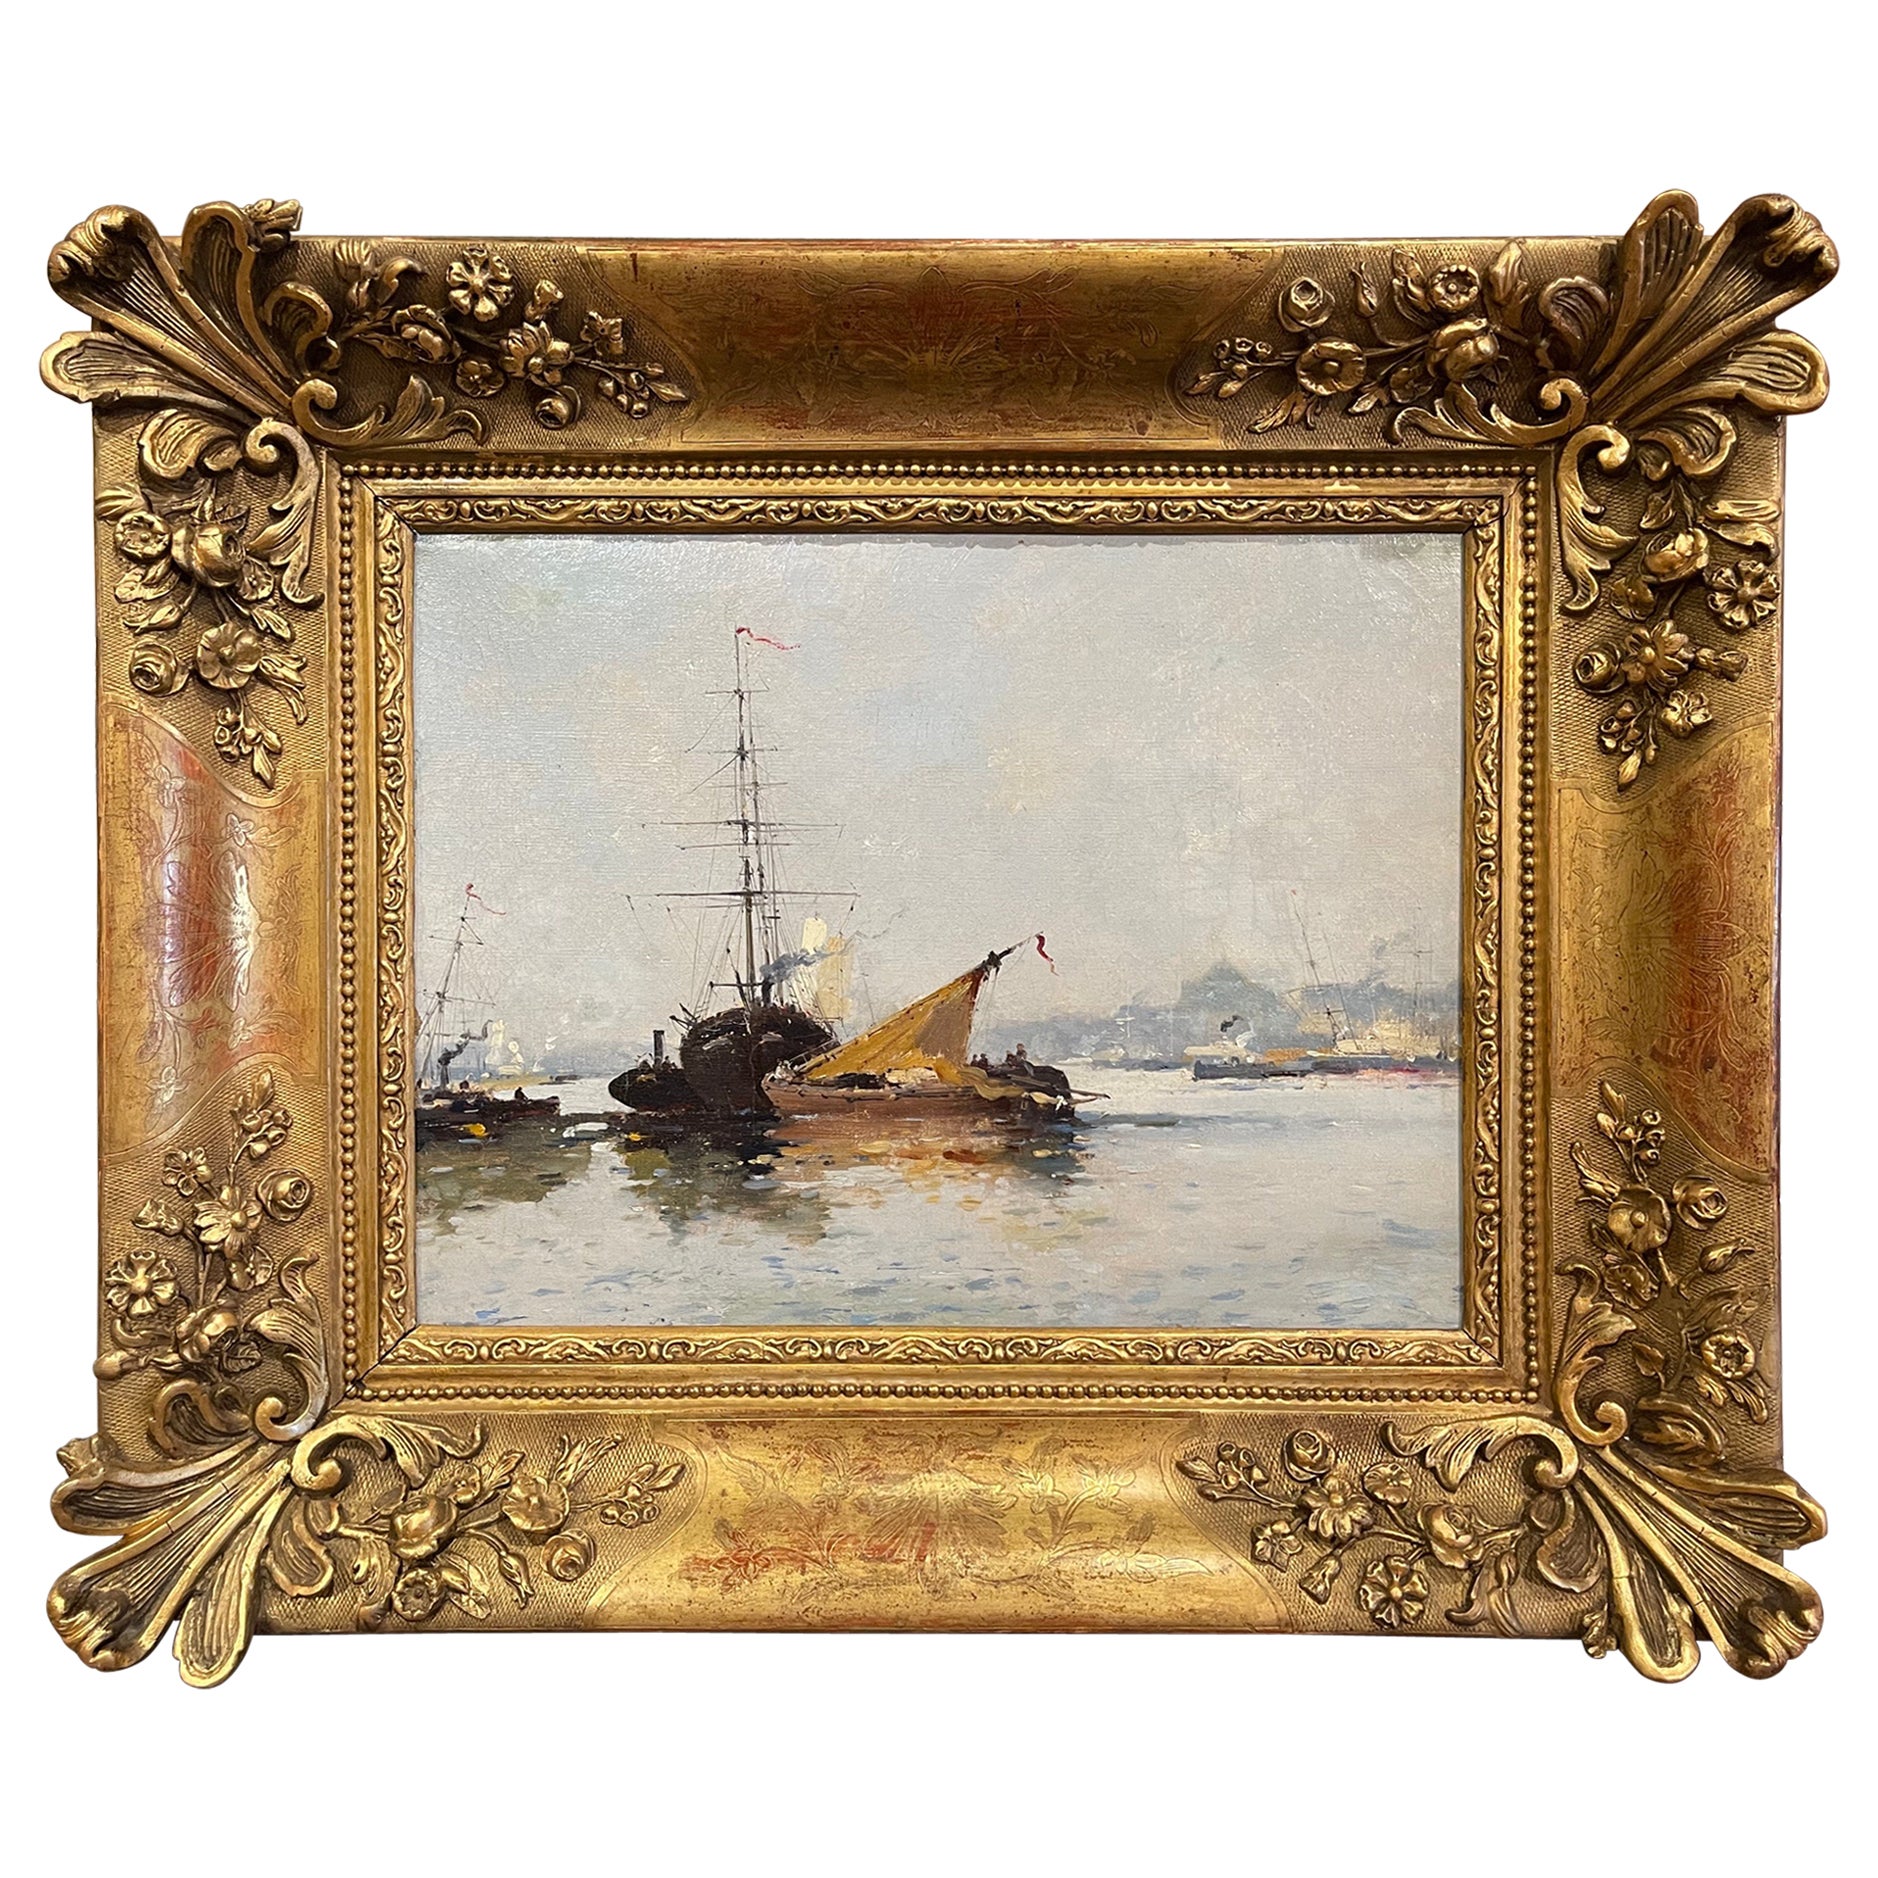 Tableau de marine à l'huile du 19e siècle dans un cadre sculpté et doré signé E. Galien-Laloue